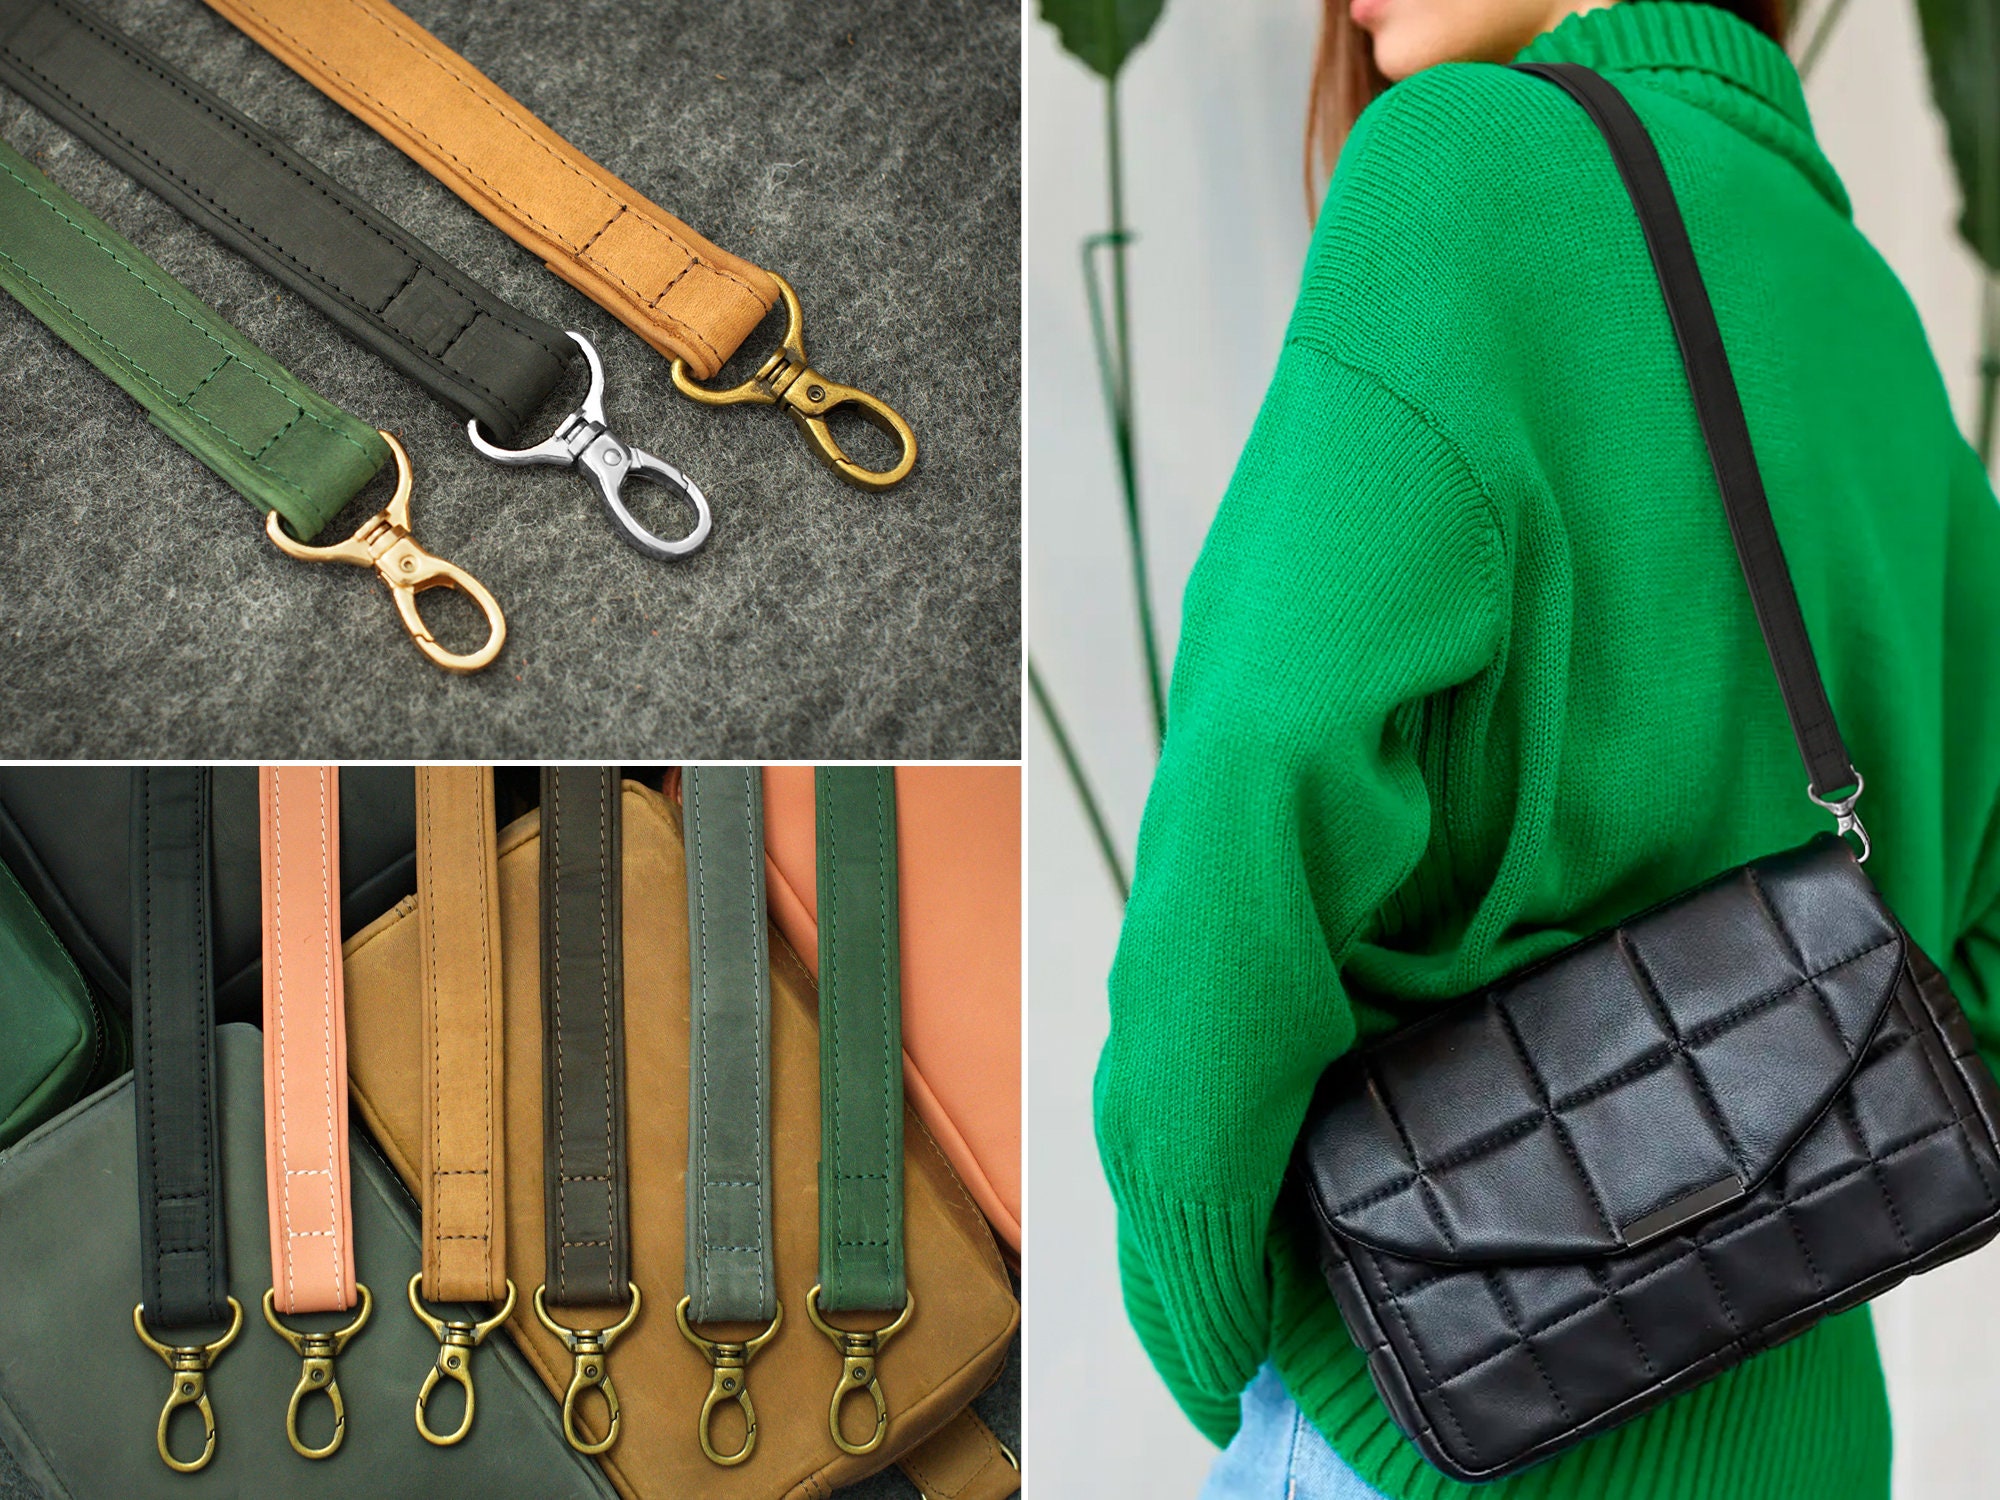 24” byhands Genule Leather Shoulder Bag Straps/Purse Handles, Tan (40-4125)